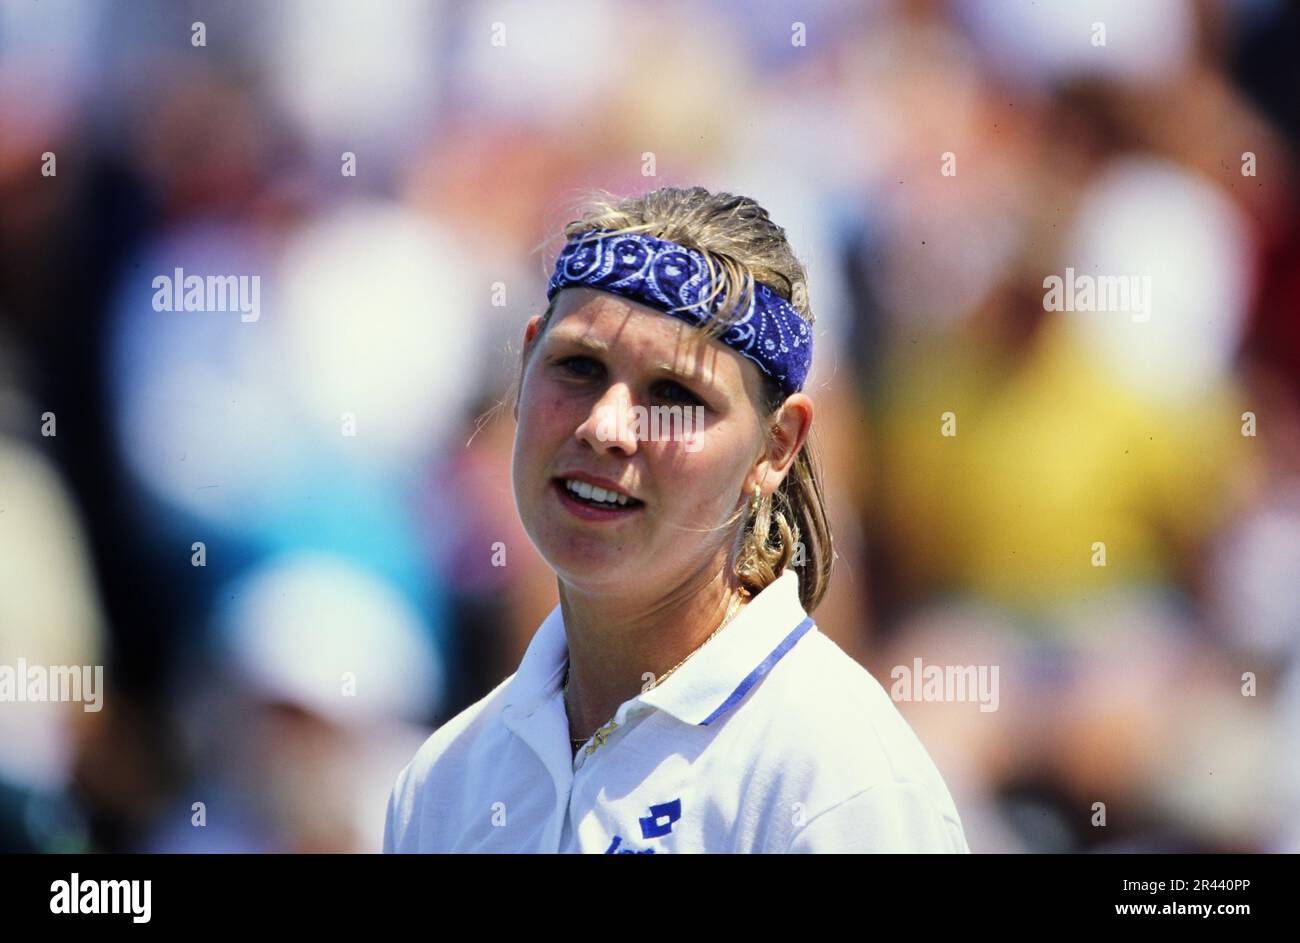 Anke Huber, deutsche Tennisspielerin, auf dem Tennisplatz Porträt. Stockfoto